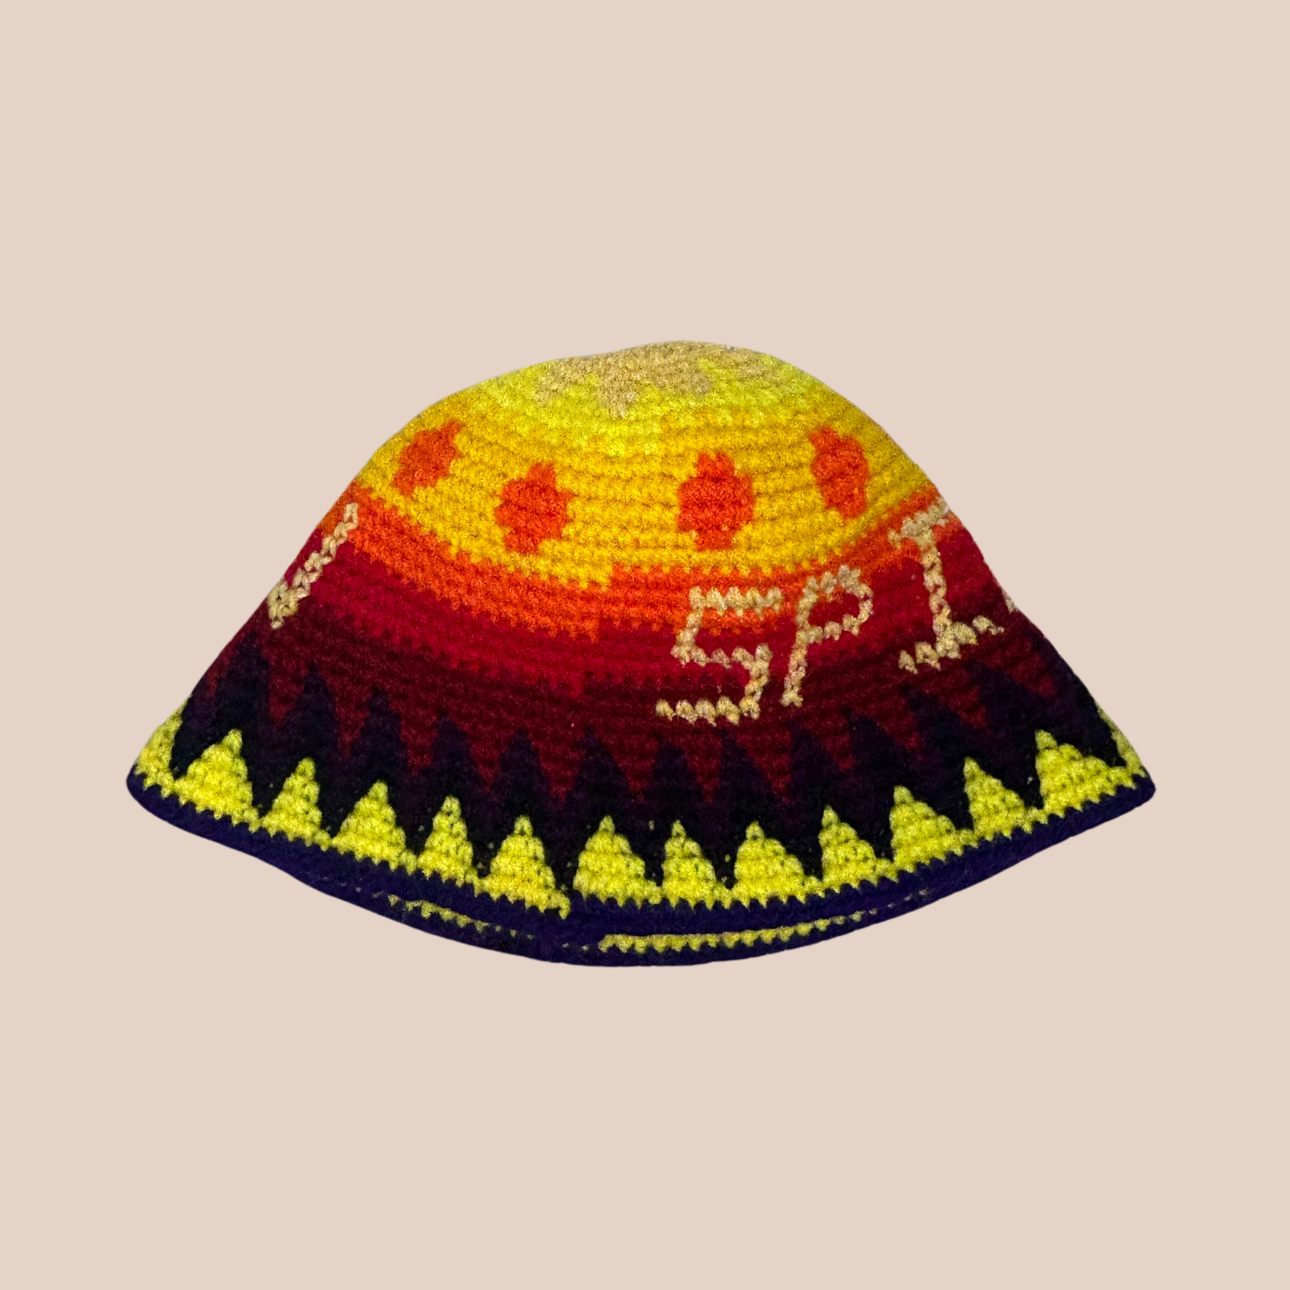 Un bucket hat crocheté en laine et acrylique, arborant des couleurs vives et audacieuses, texte sun et spirit